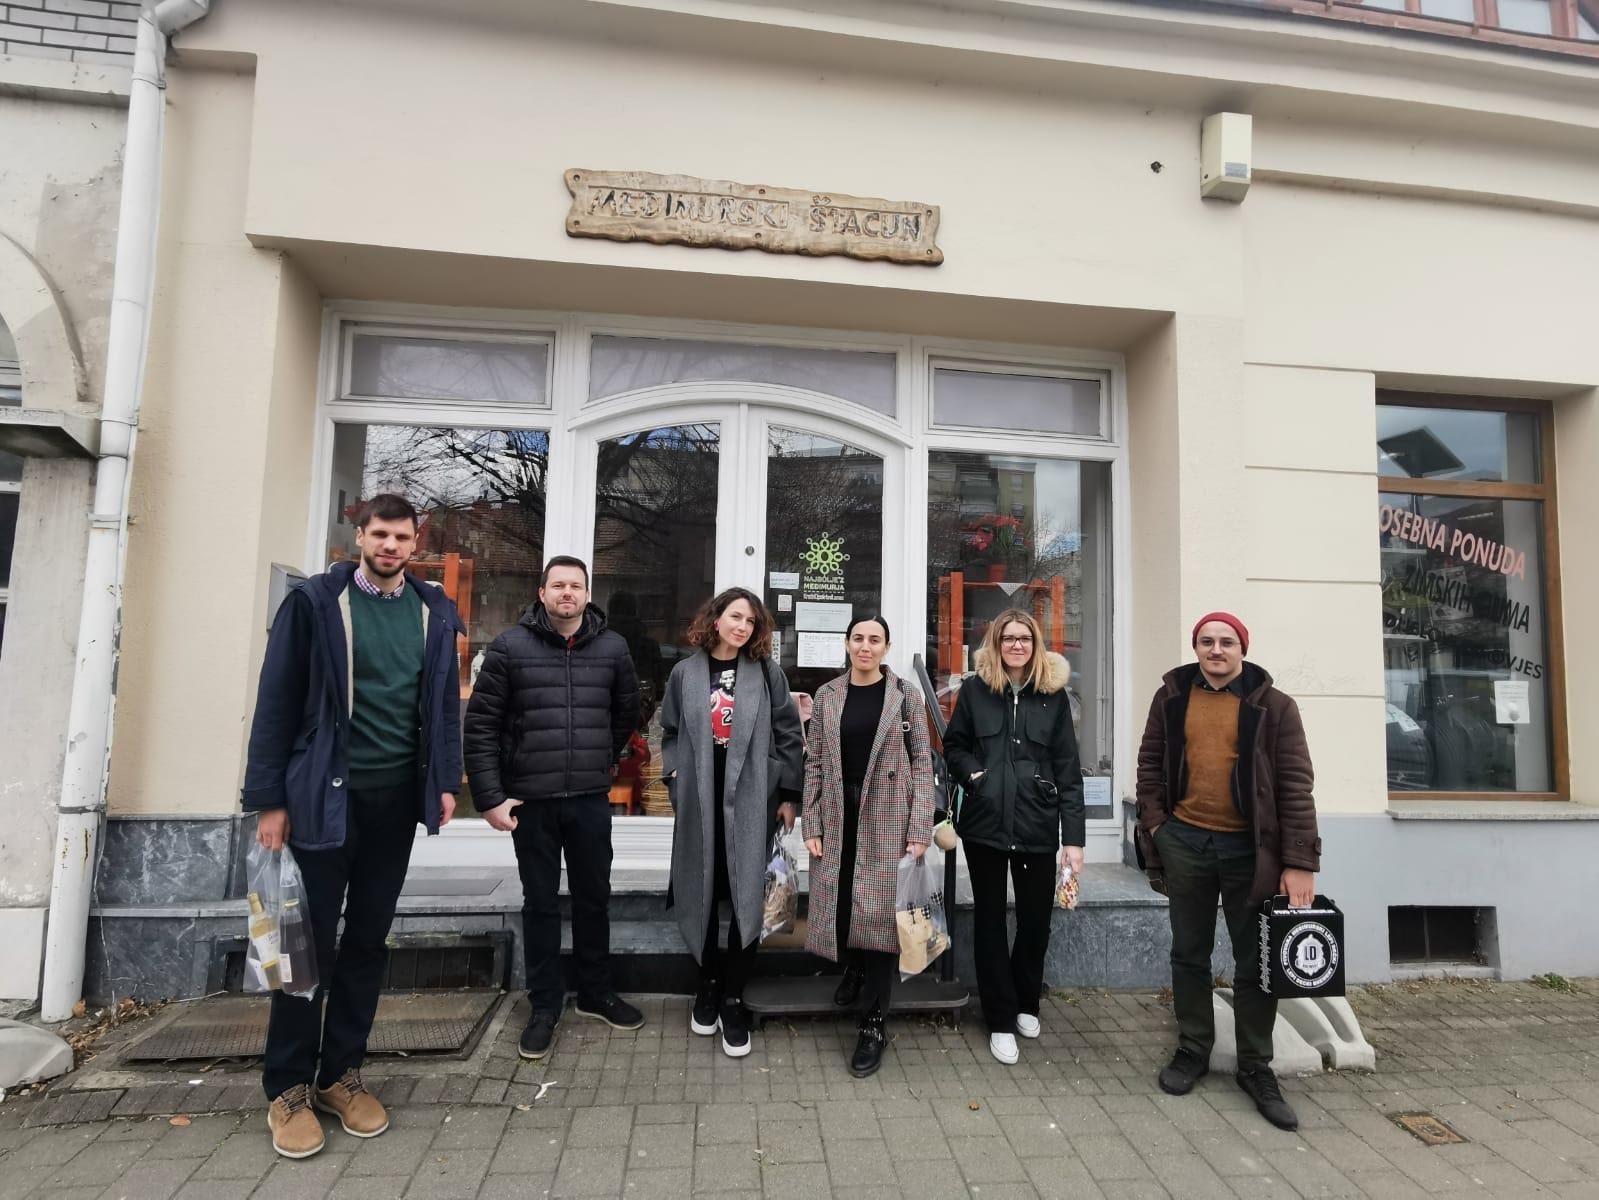 Upoznavanje društvenih poduzeća u Čakovcu &#8211; studijsko putovanje